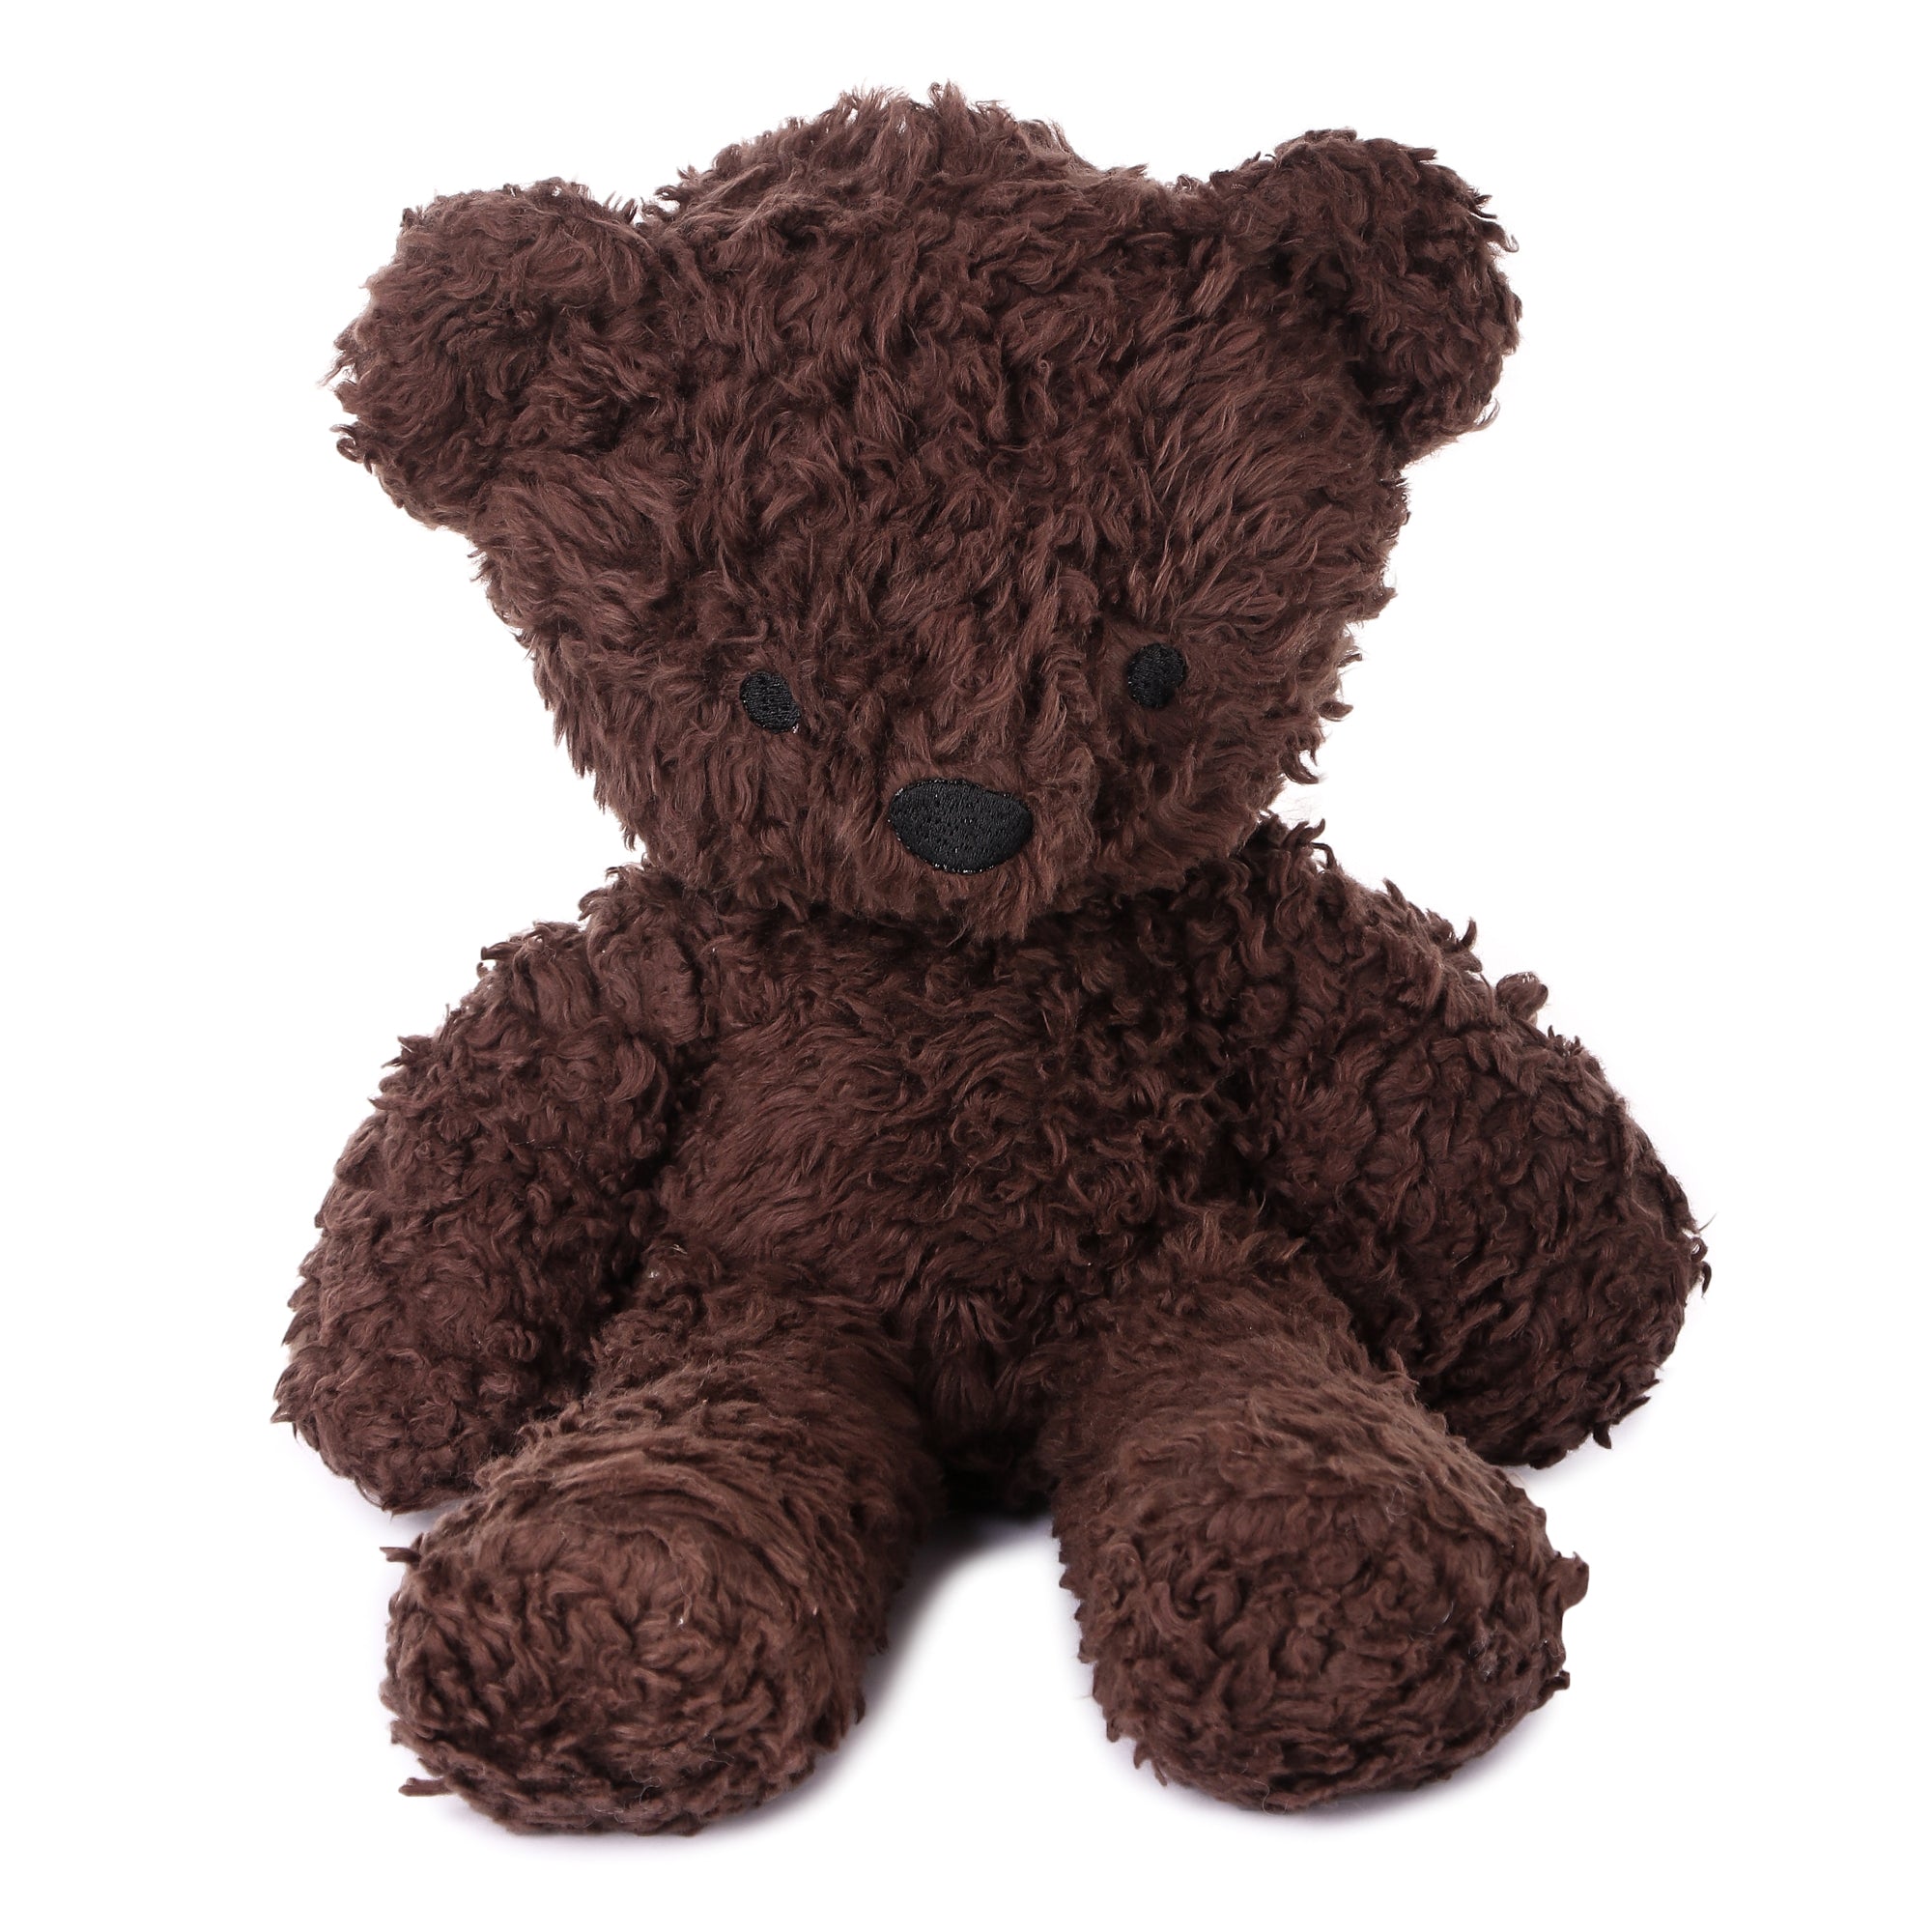 14 Chocolate Herbal Dye Sherpa Bear Stuffed Animal | Bears for Humanity